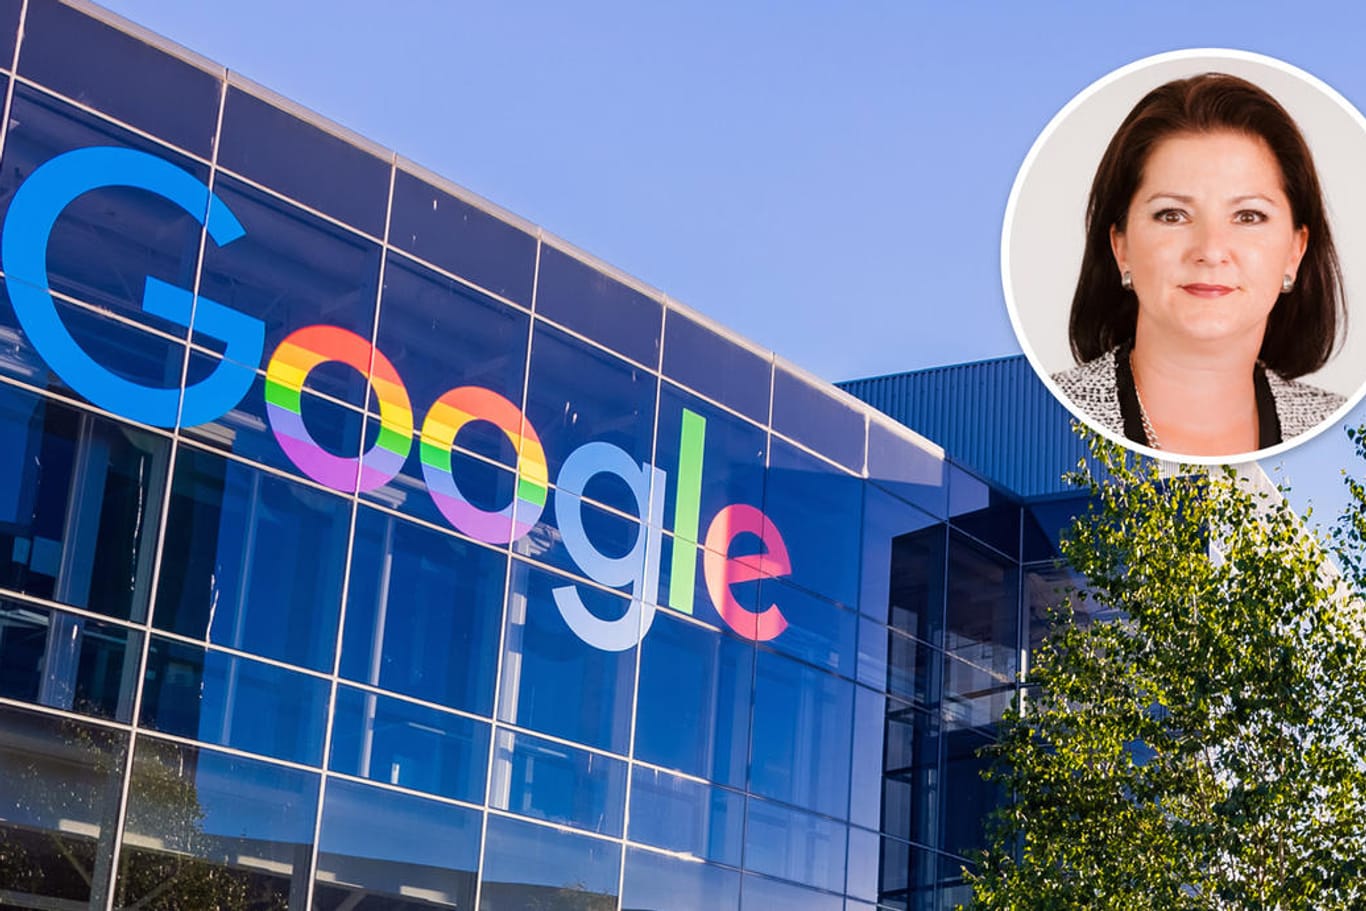 Google-Campus in Mountain View (Archivbild): Die Google-Mutter Alphabet hat im ersten Quartal 15,5 Milliarden US-Dollar Gewinn gemacht.